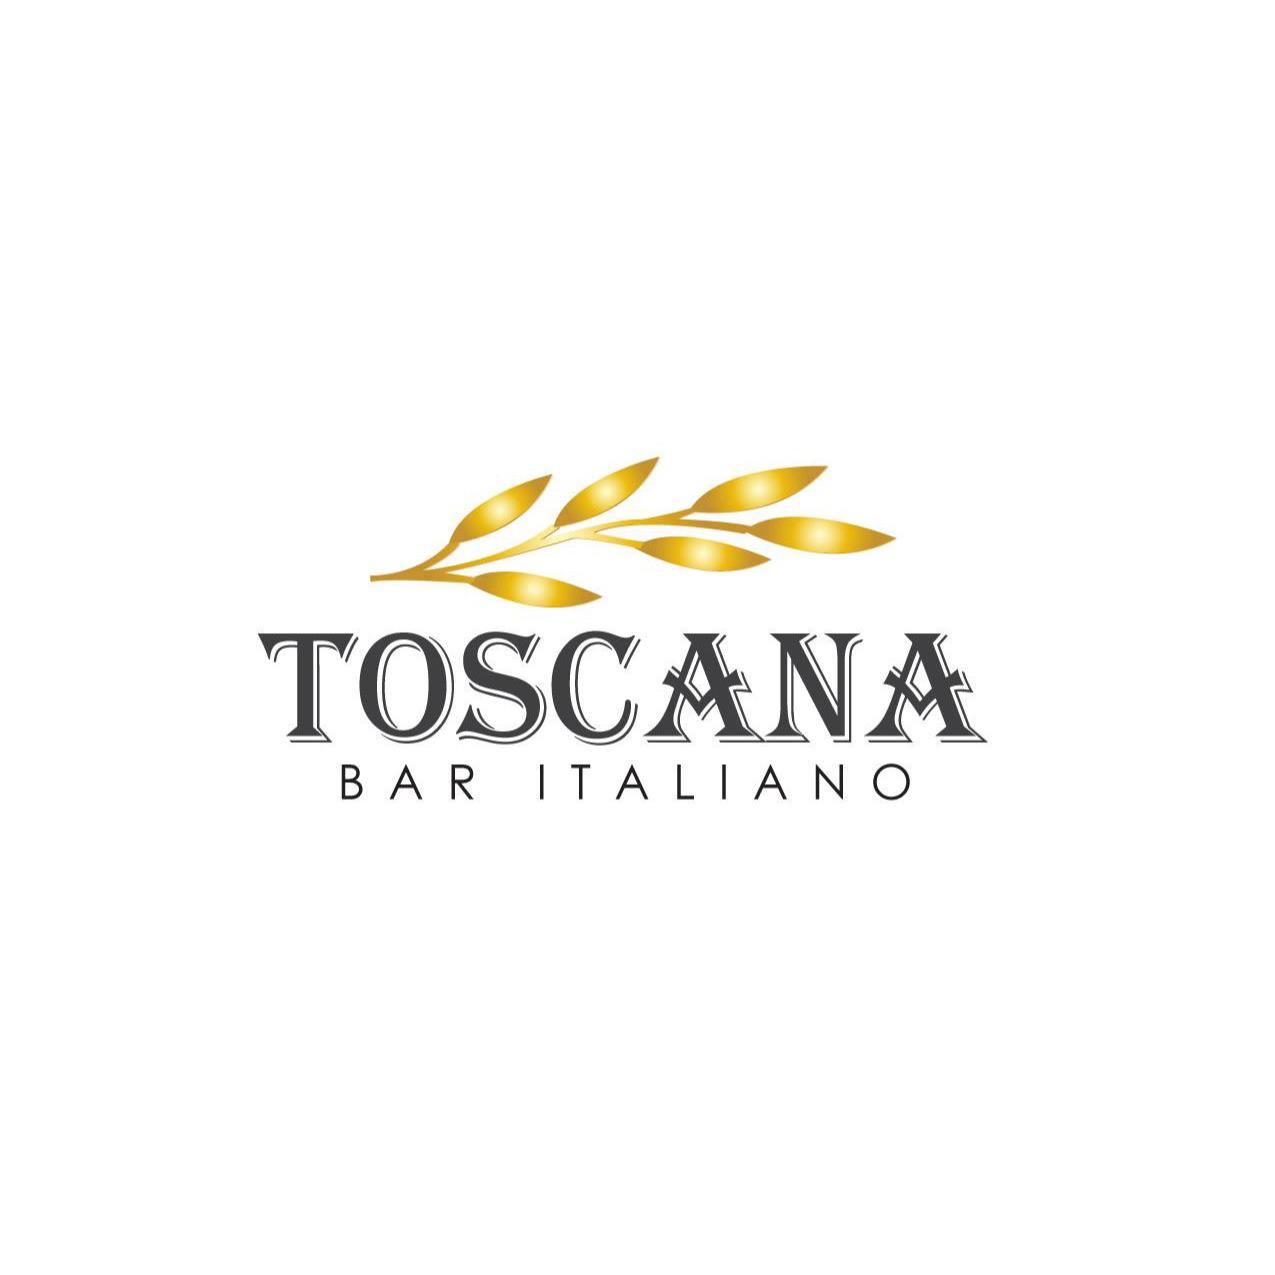 Toscana Bar Italiano